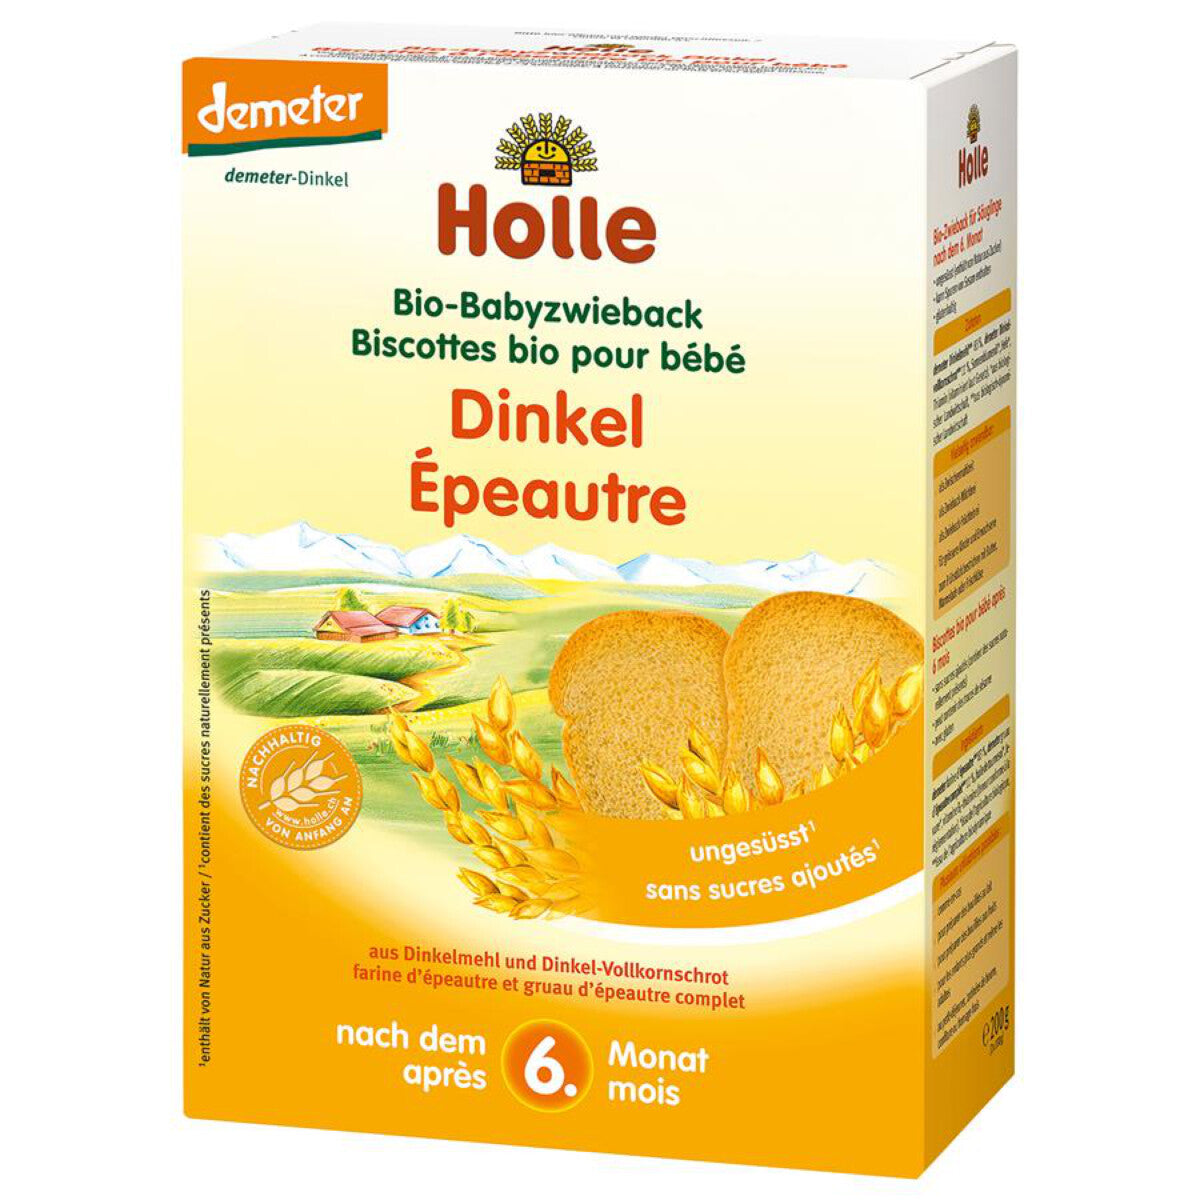 HOLLE Babyzwieback Dinkel - 200 g